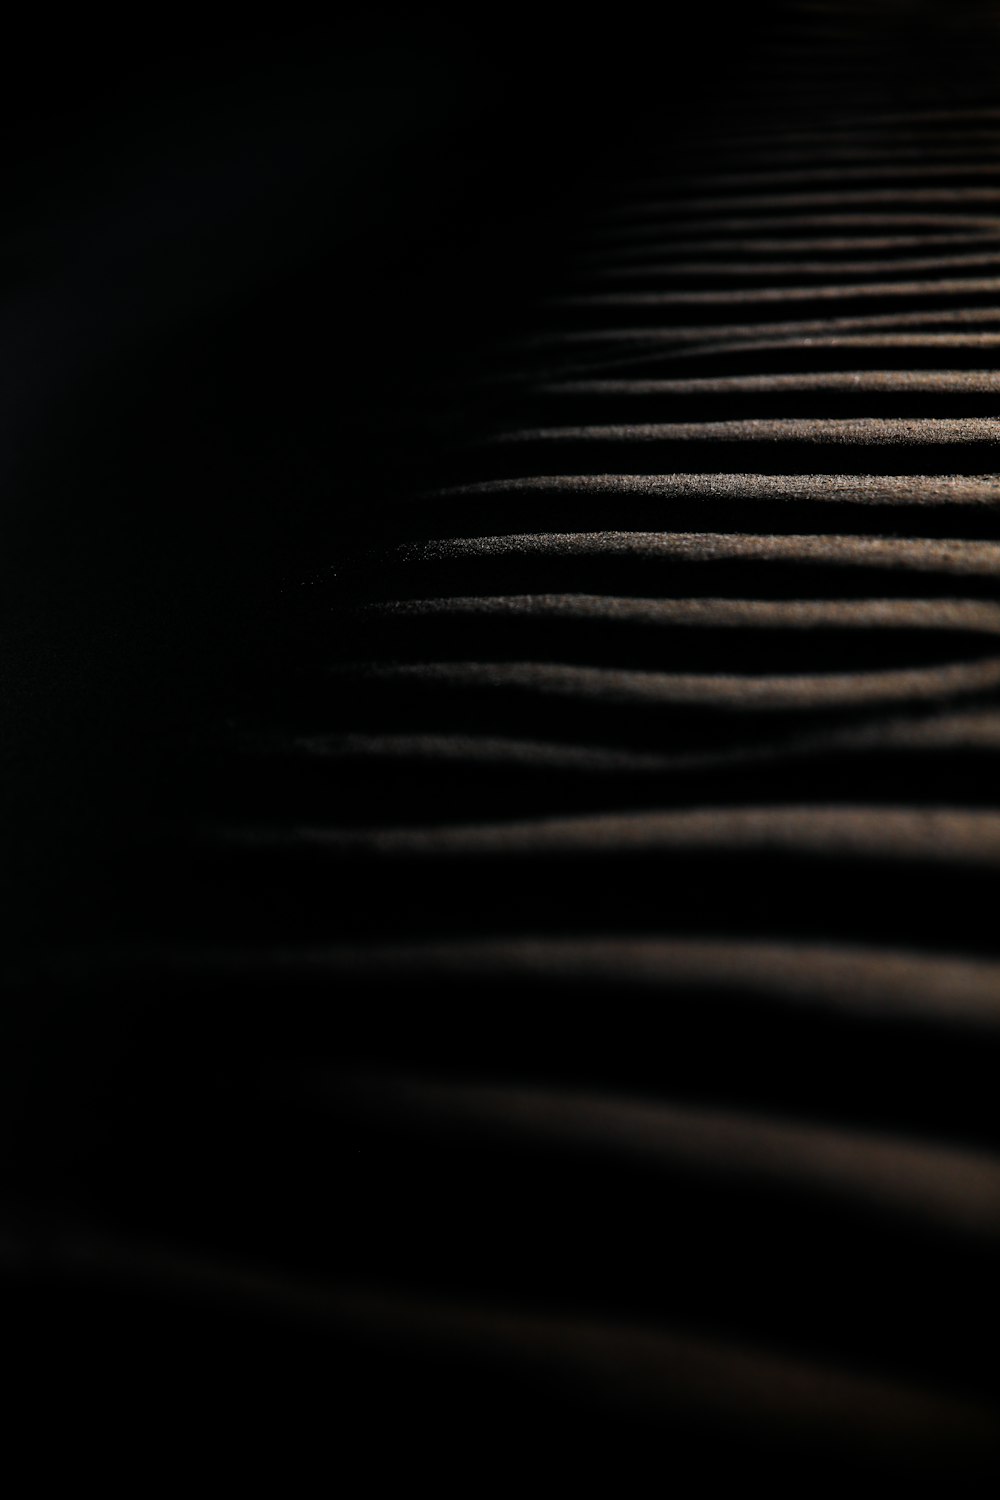 Una foto en blanco y negro de una duna de arena